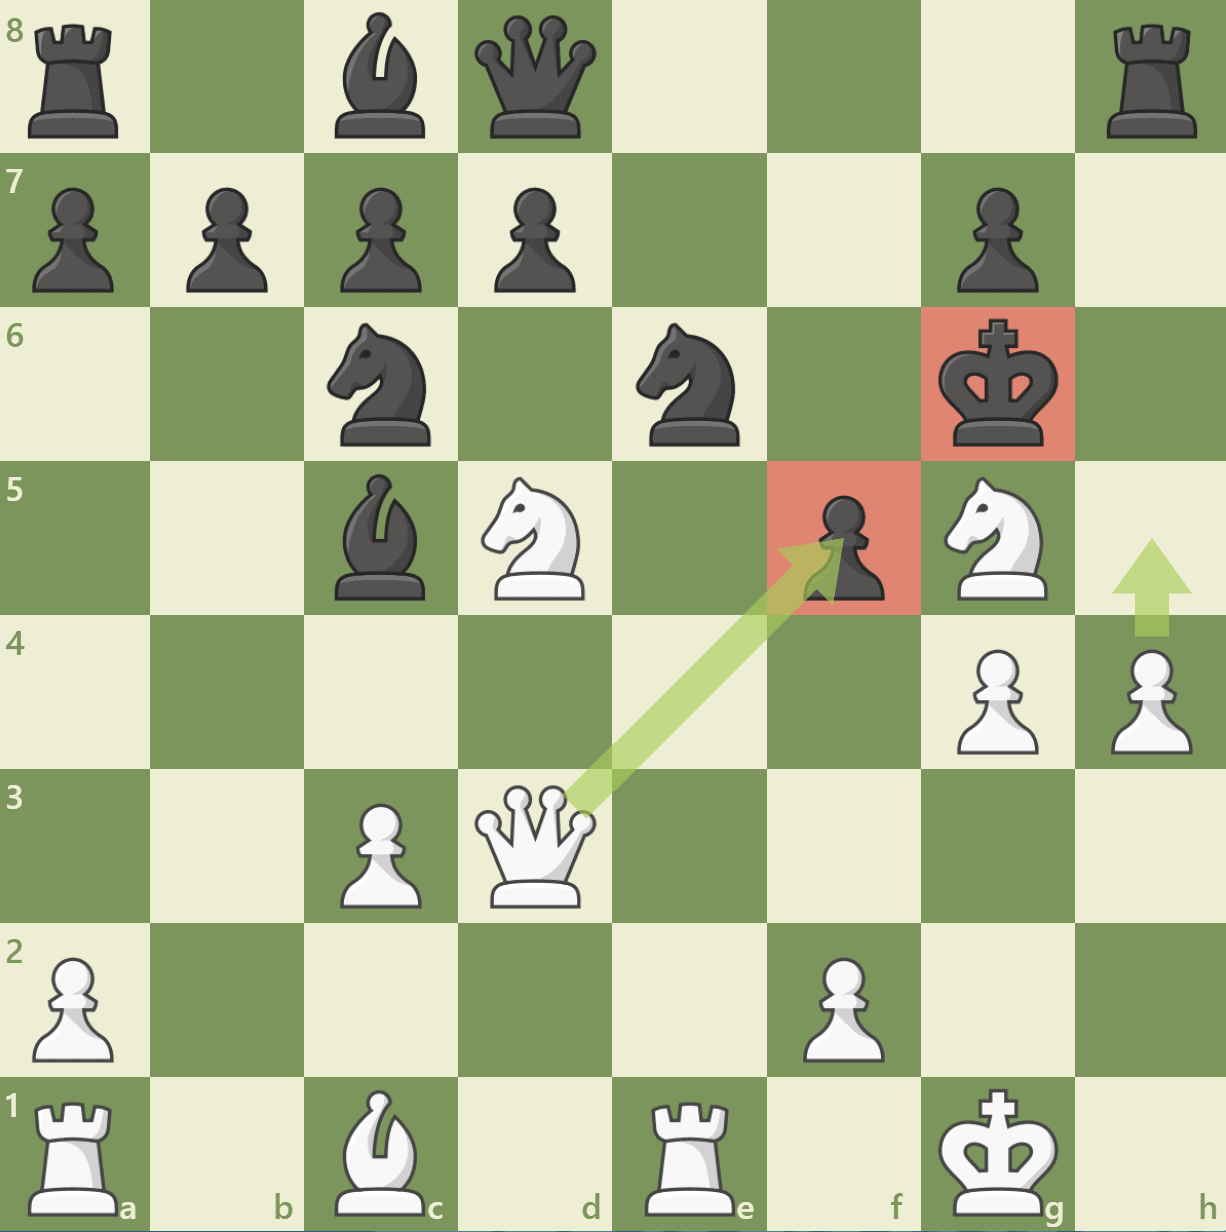 Nimzo doubled pawns